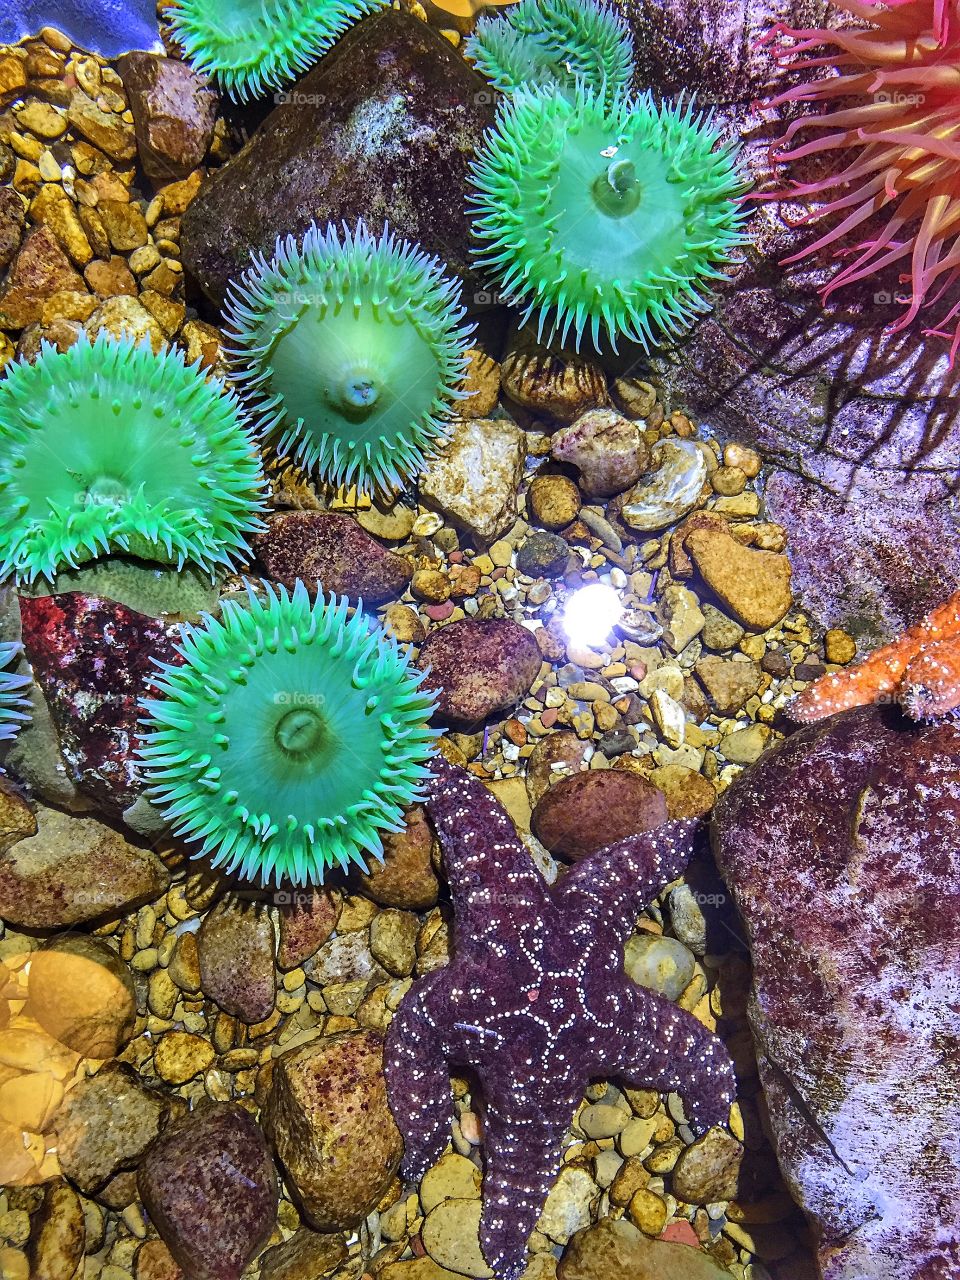 View of starfish underwater